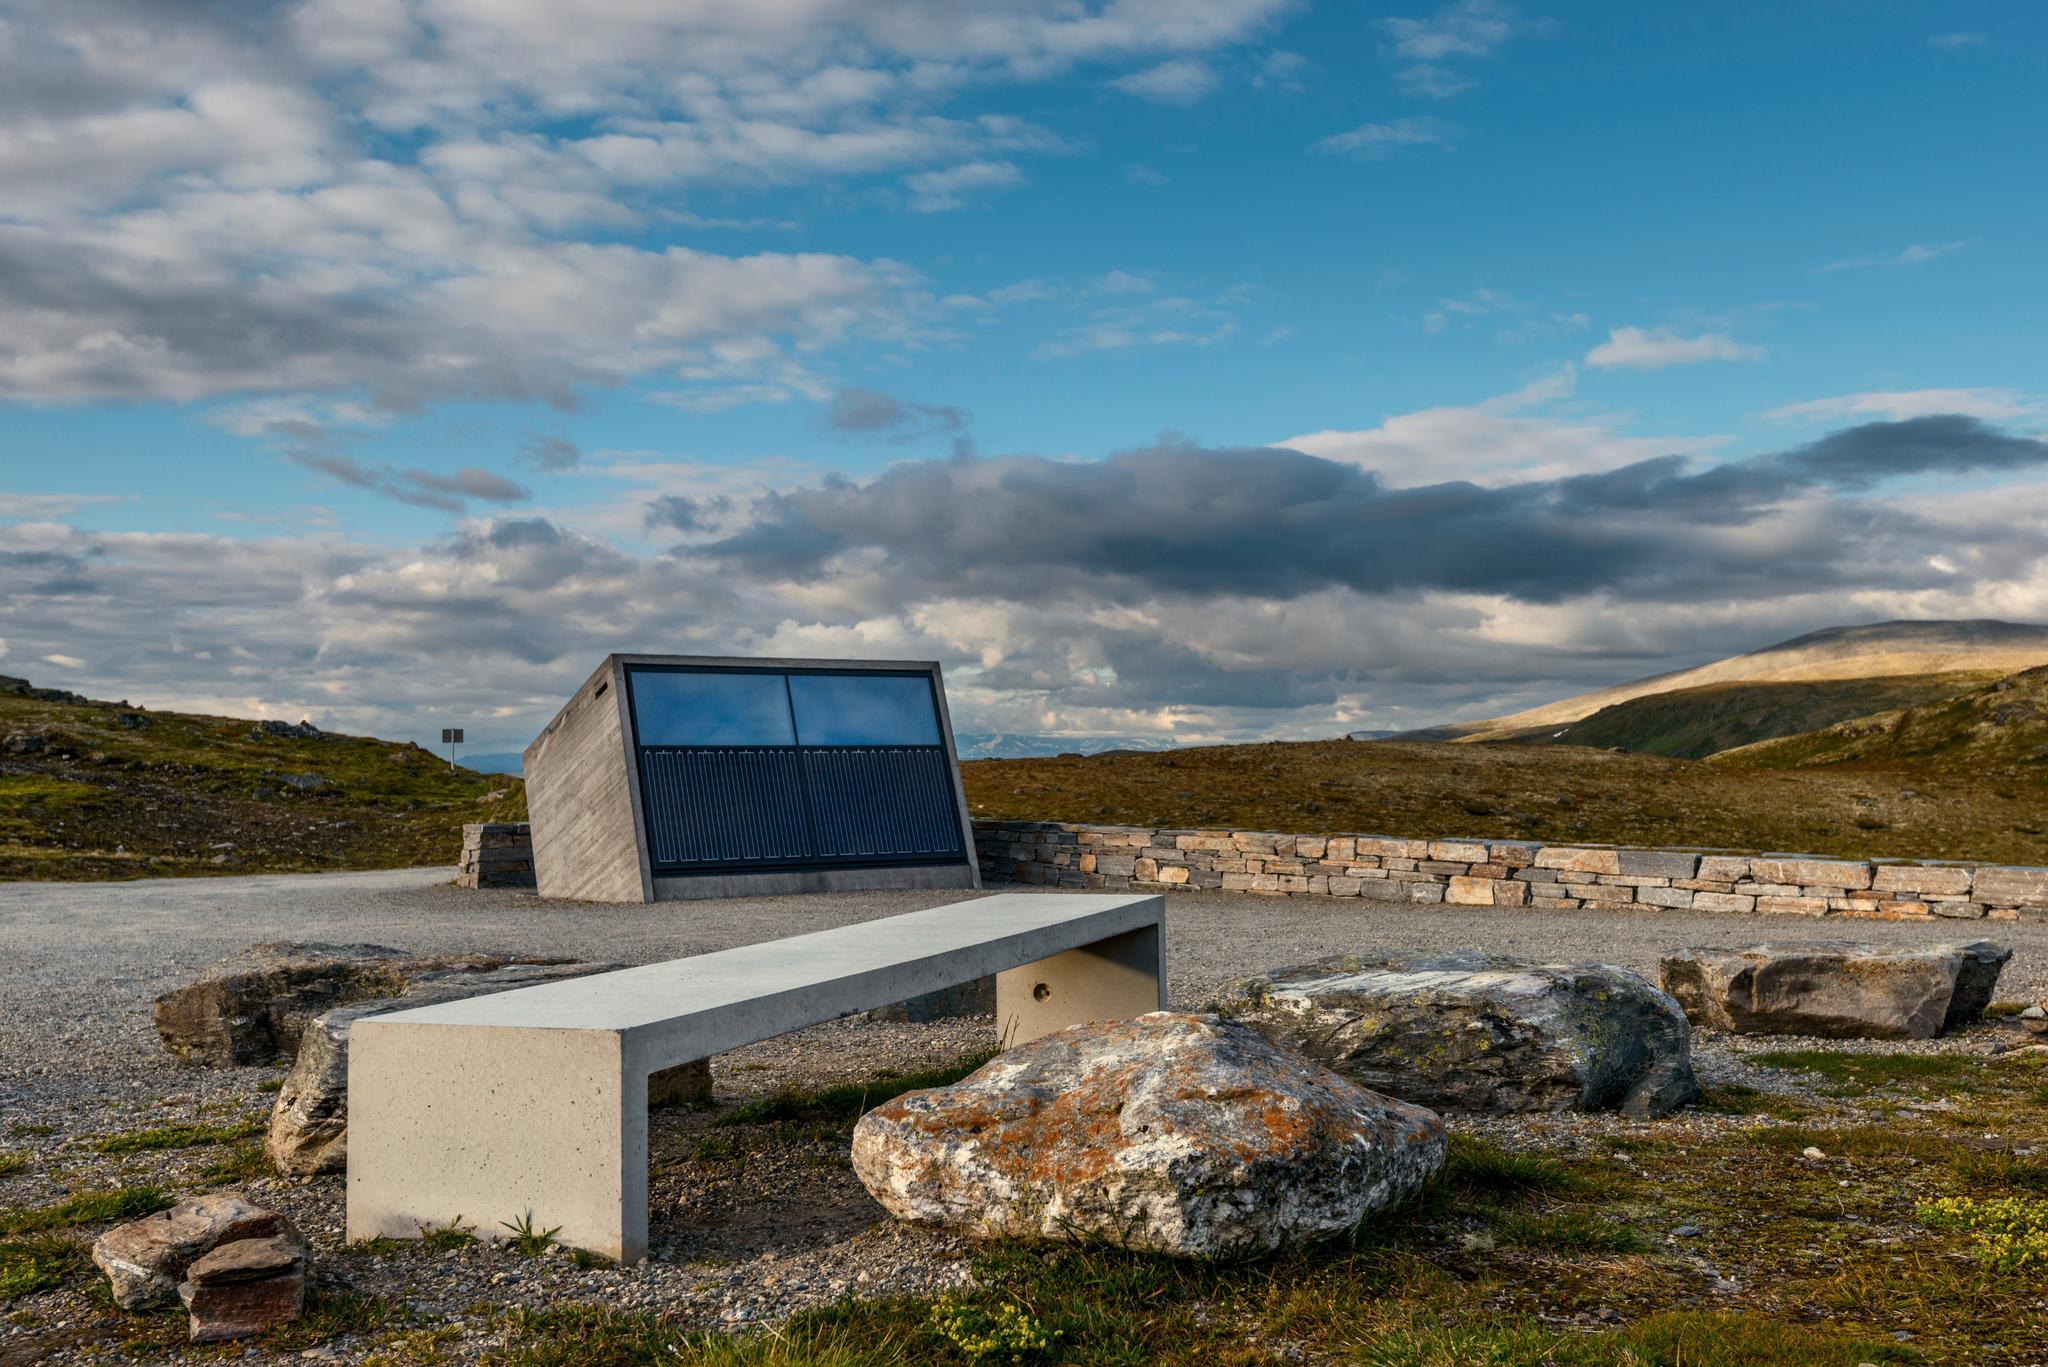 Flotane rasteplass på Aurlandsfjellet får all nødvendig energi fra solcellepanelene som dekker deler av bygget. Arkitekt: Lars Berge / LJB AS.